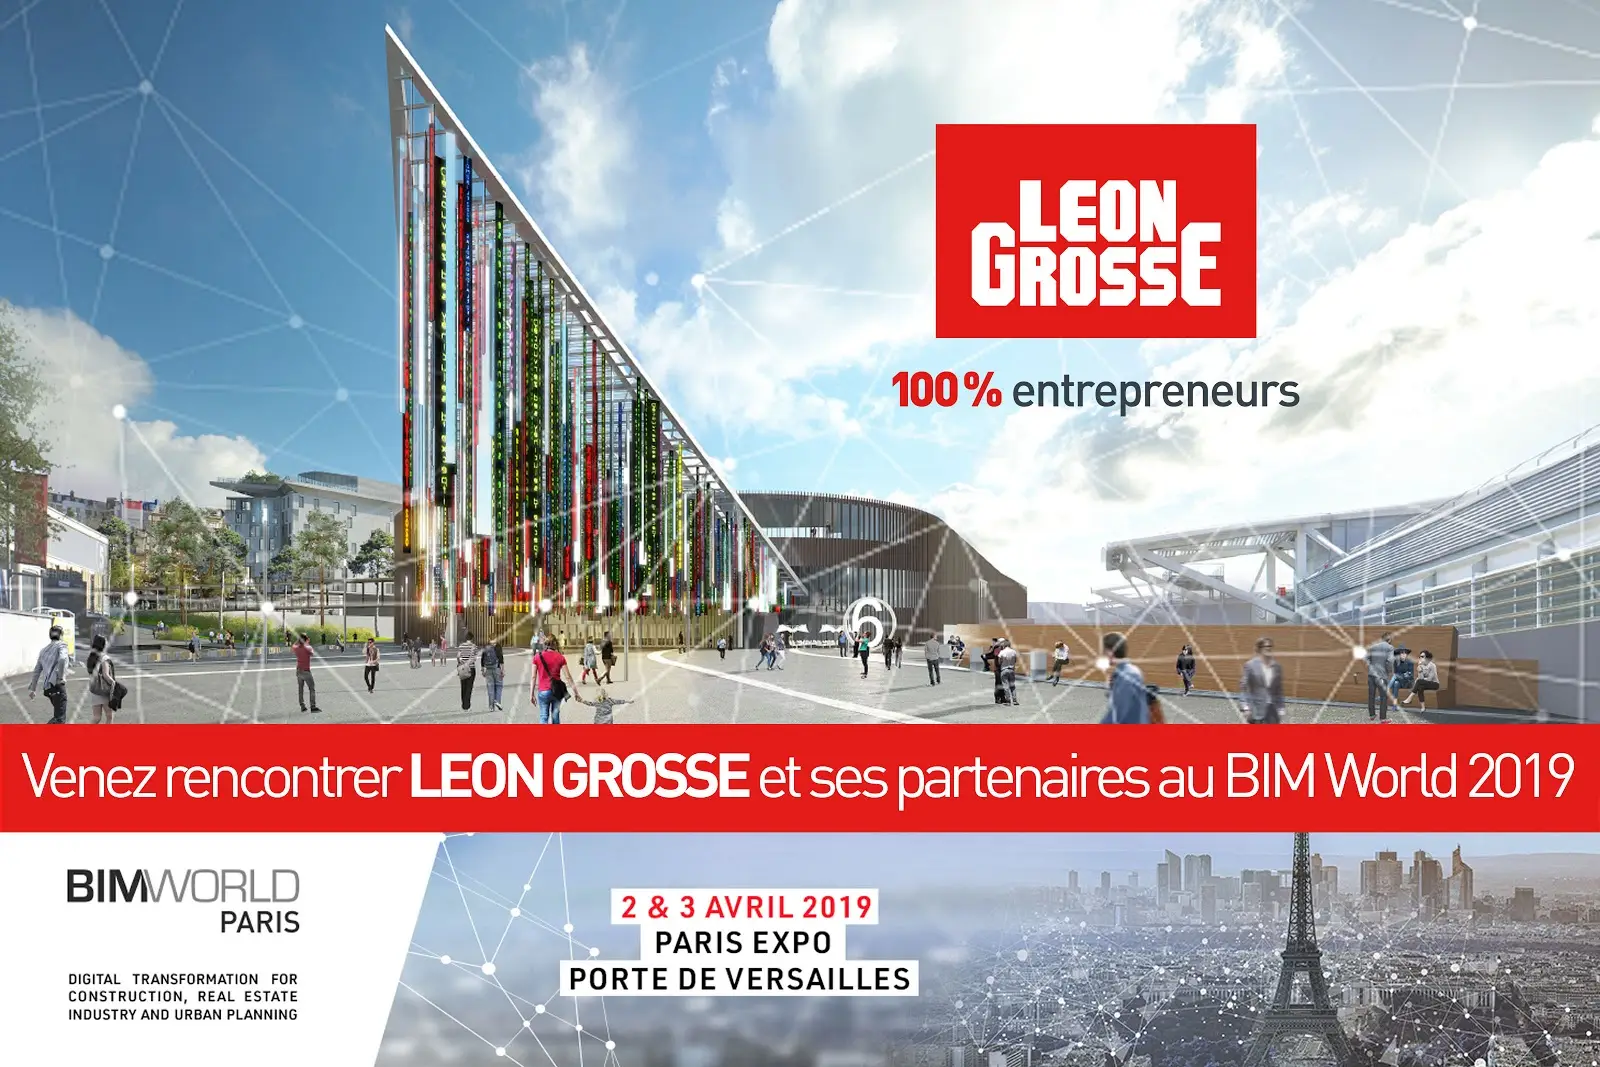 Venez rencontrer Léon Grosse et ses partenaires au BIM World 2019